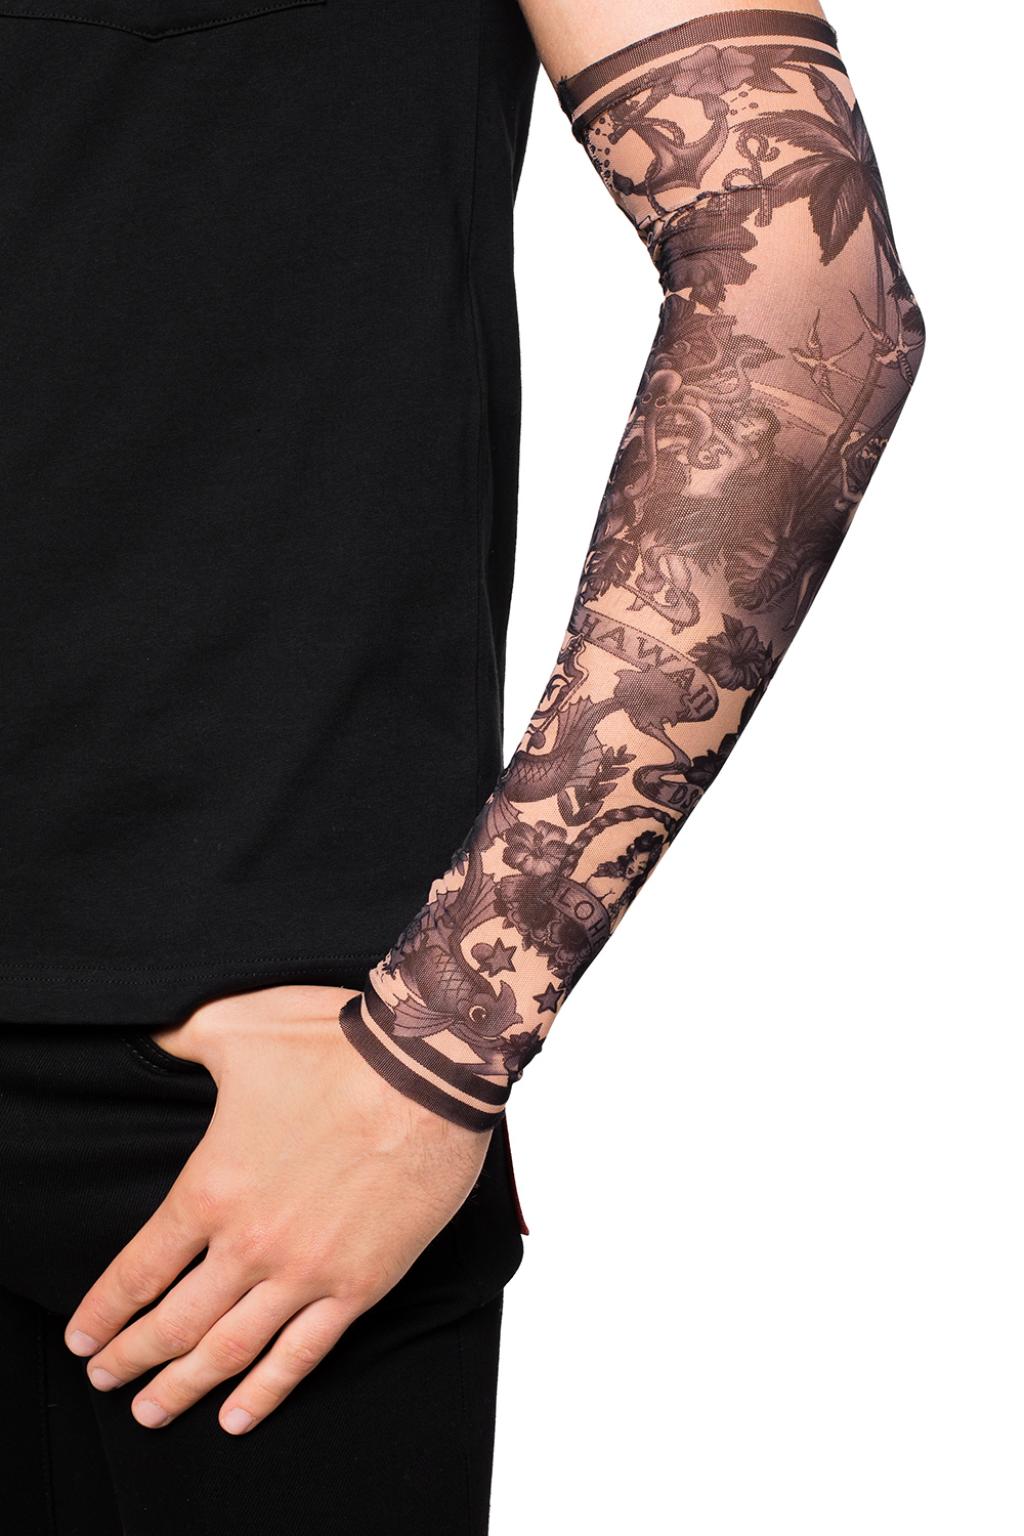 #tattoo #sleeves